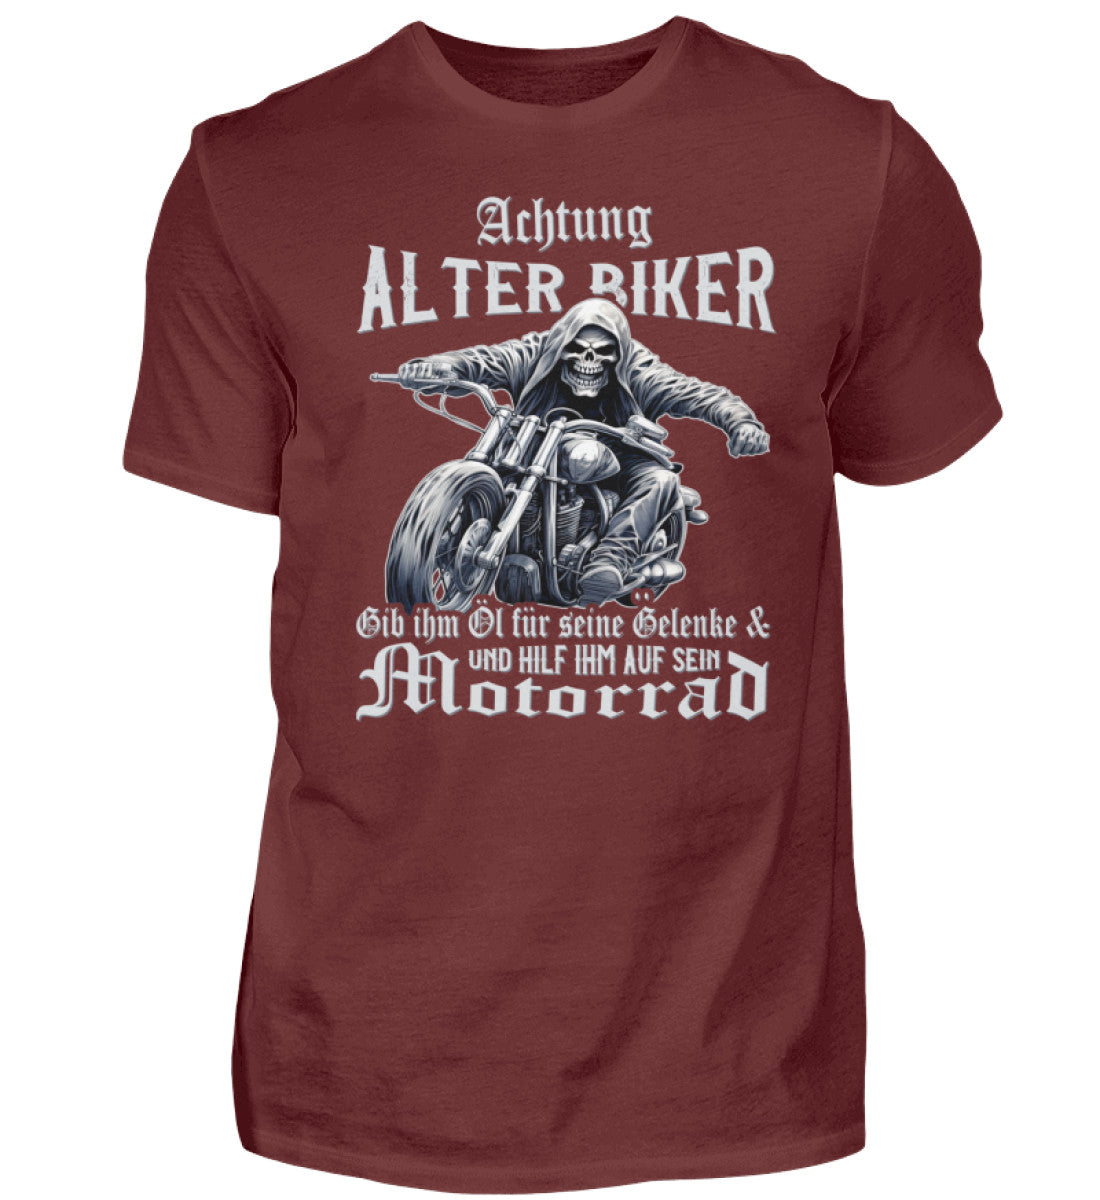 Ein Biker T-Shirt für Motorradfahrer von Wingbikers mit dem Aufdruck, Achtung alter Biker - Gib ihm Öl und hilf ihm auf sein Motorrad - in weinrot.